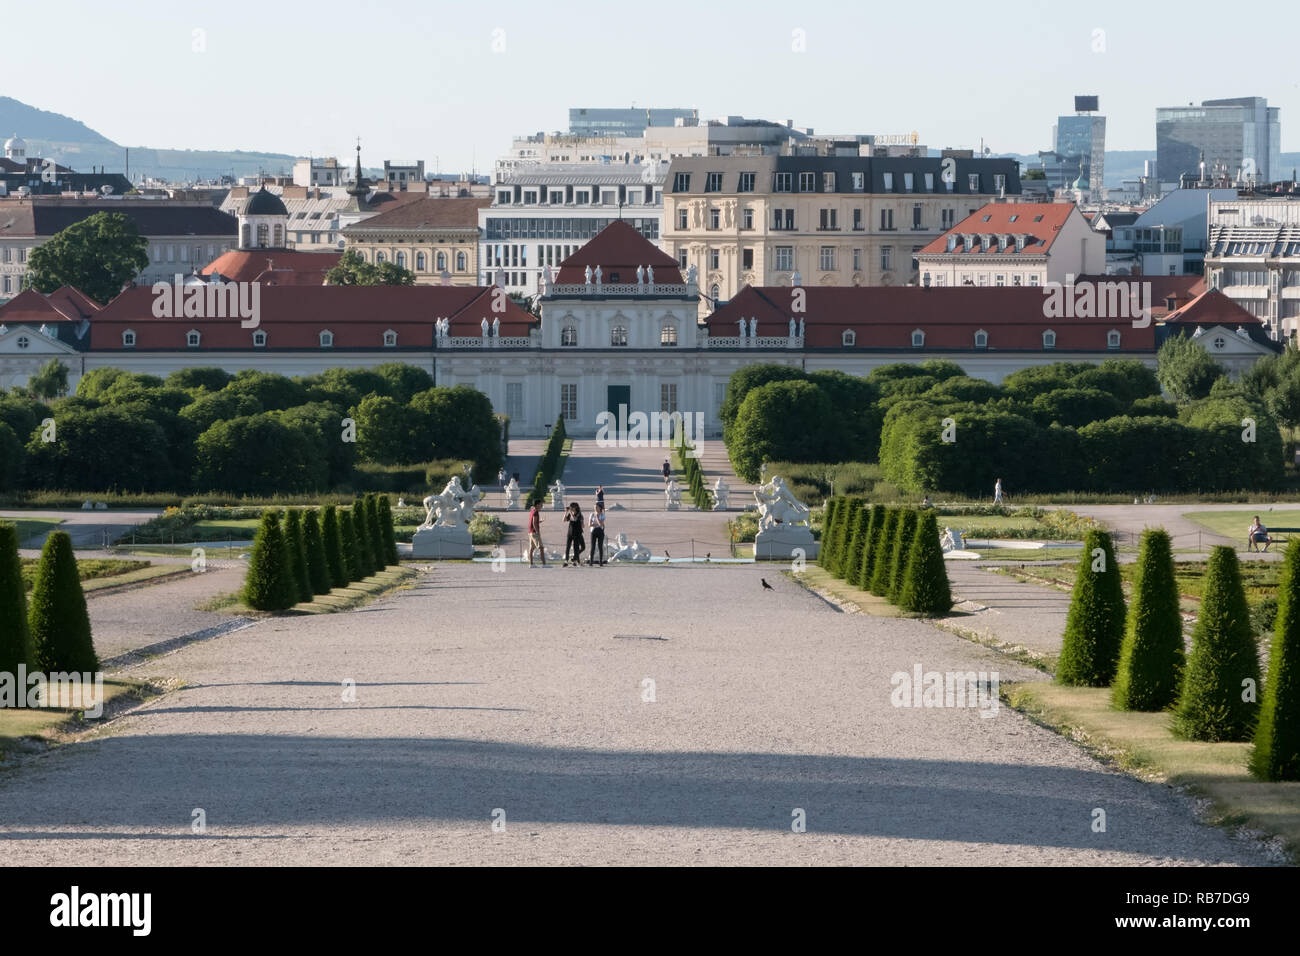 Vienne, Autriche - 18 juin 2017 : le Palais du Belvédère et les jardins sont indiqués dans un début de soirée au cours de l'été 2009. Banque D'Images